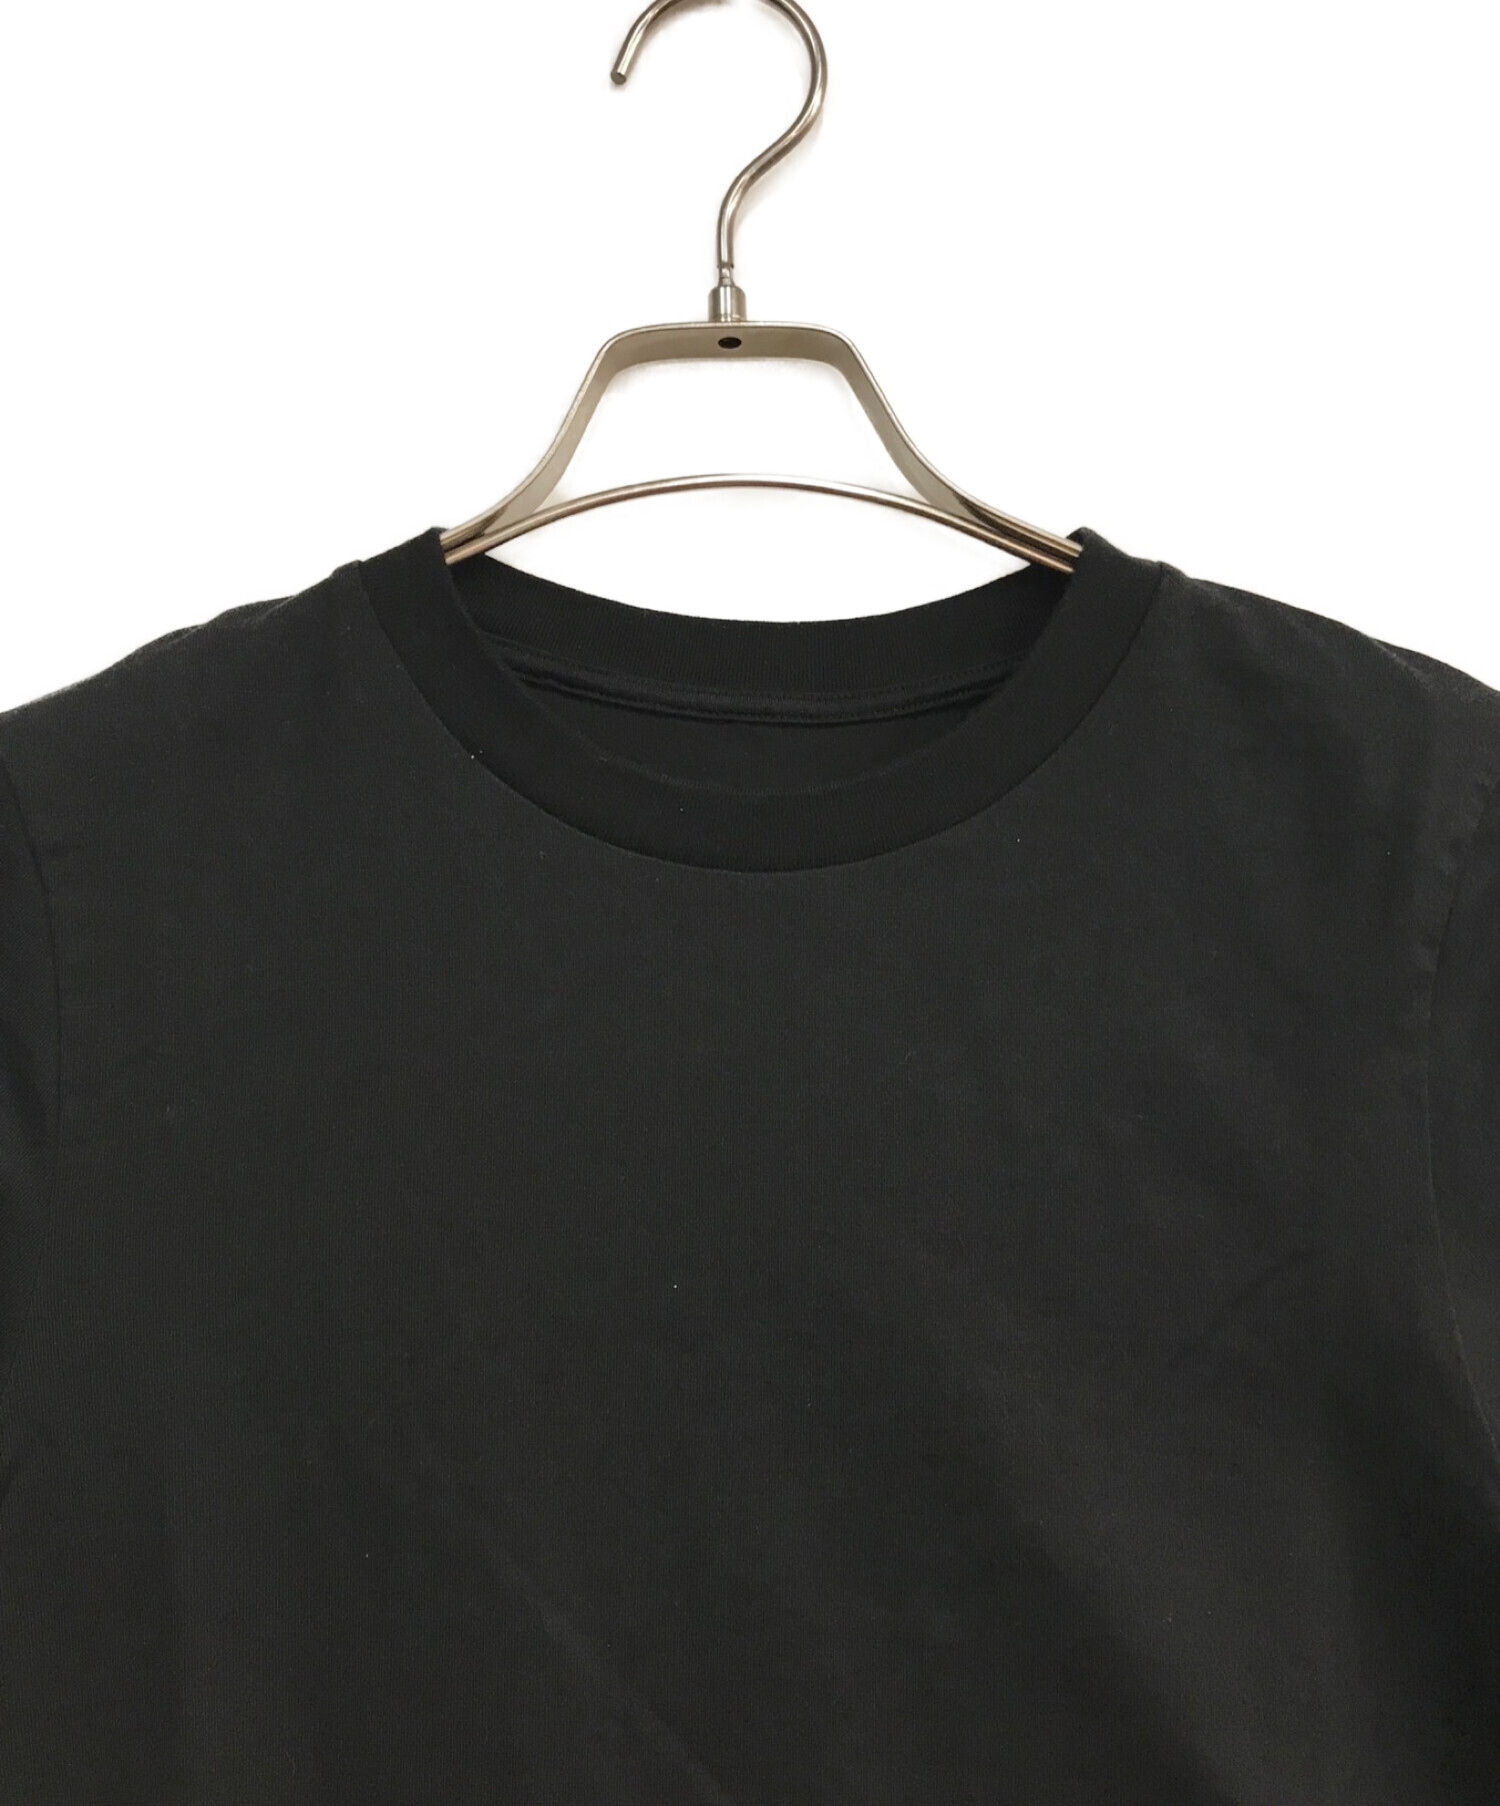 MUSE de Deuxieme Classe (ミューズ ドゥーズィエム クラス) SEA ISLAND COTTON Tシャツ　 22070500419010 ブラック サイズ:F 未使用品